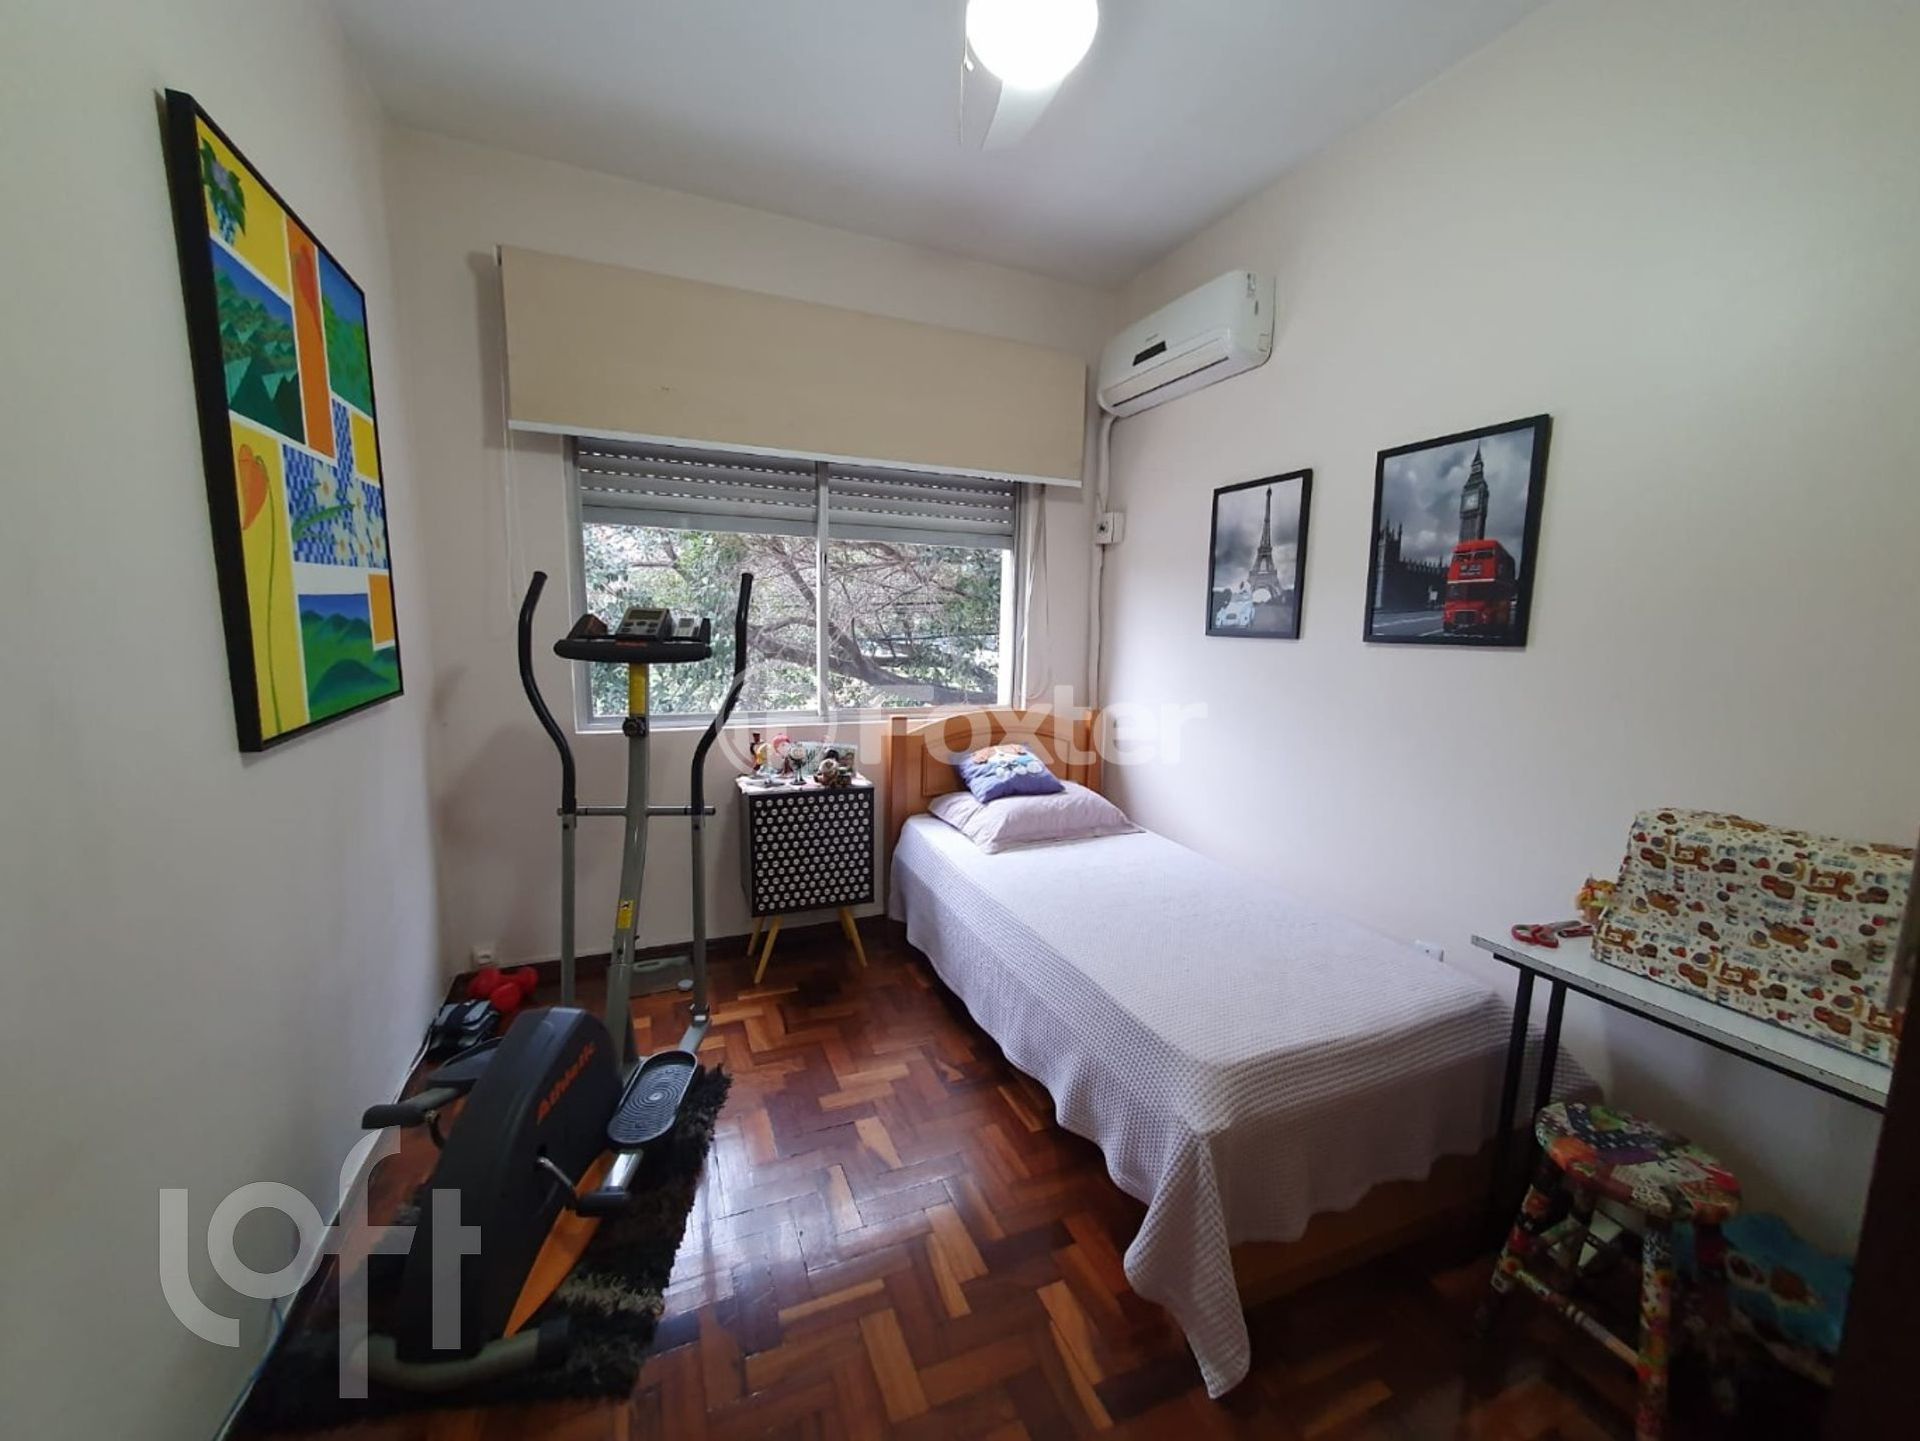 Apartamento 3 dorms à venda Avenida Ipiranga, Azenha - Porto Alegre